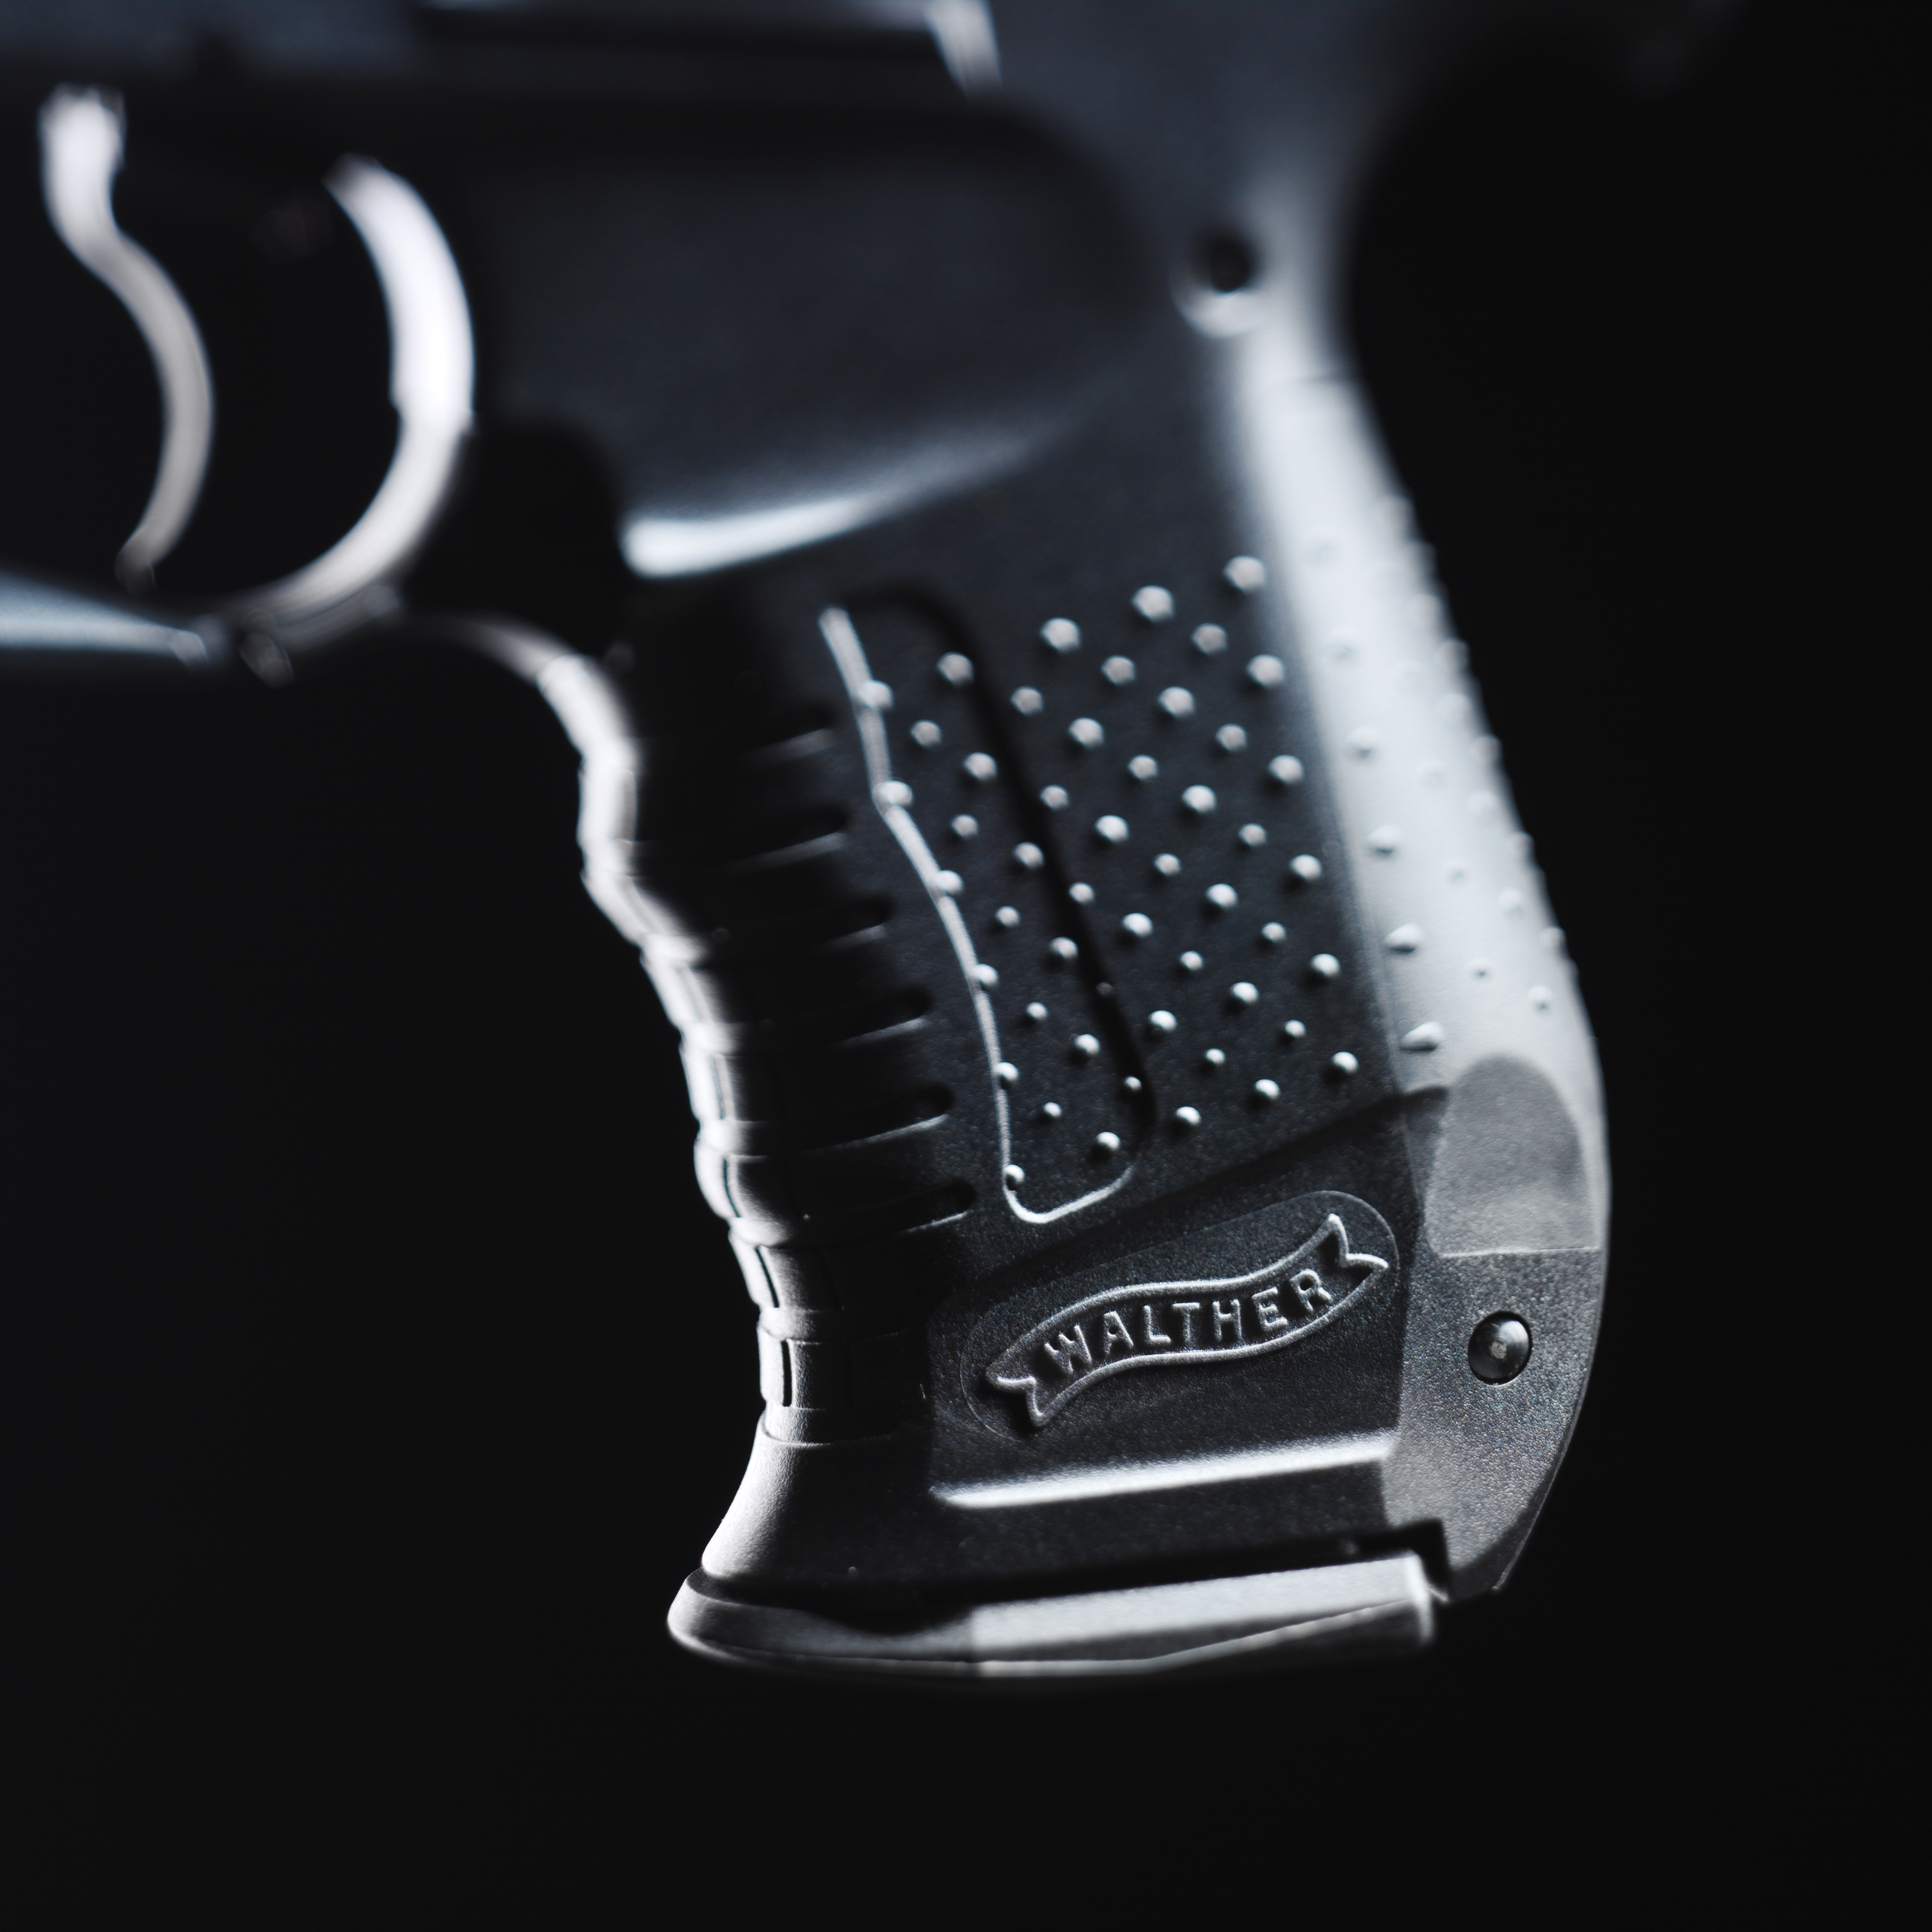 Detailansicht des Griffs der Walther CP99 Pistole